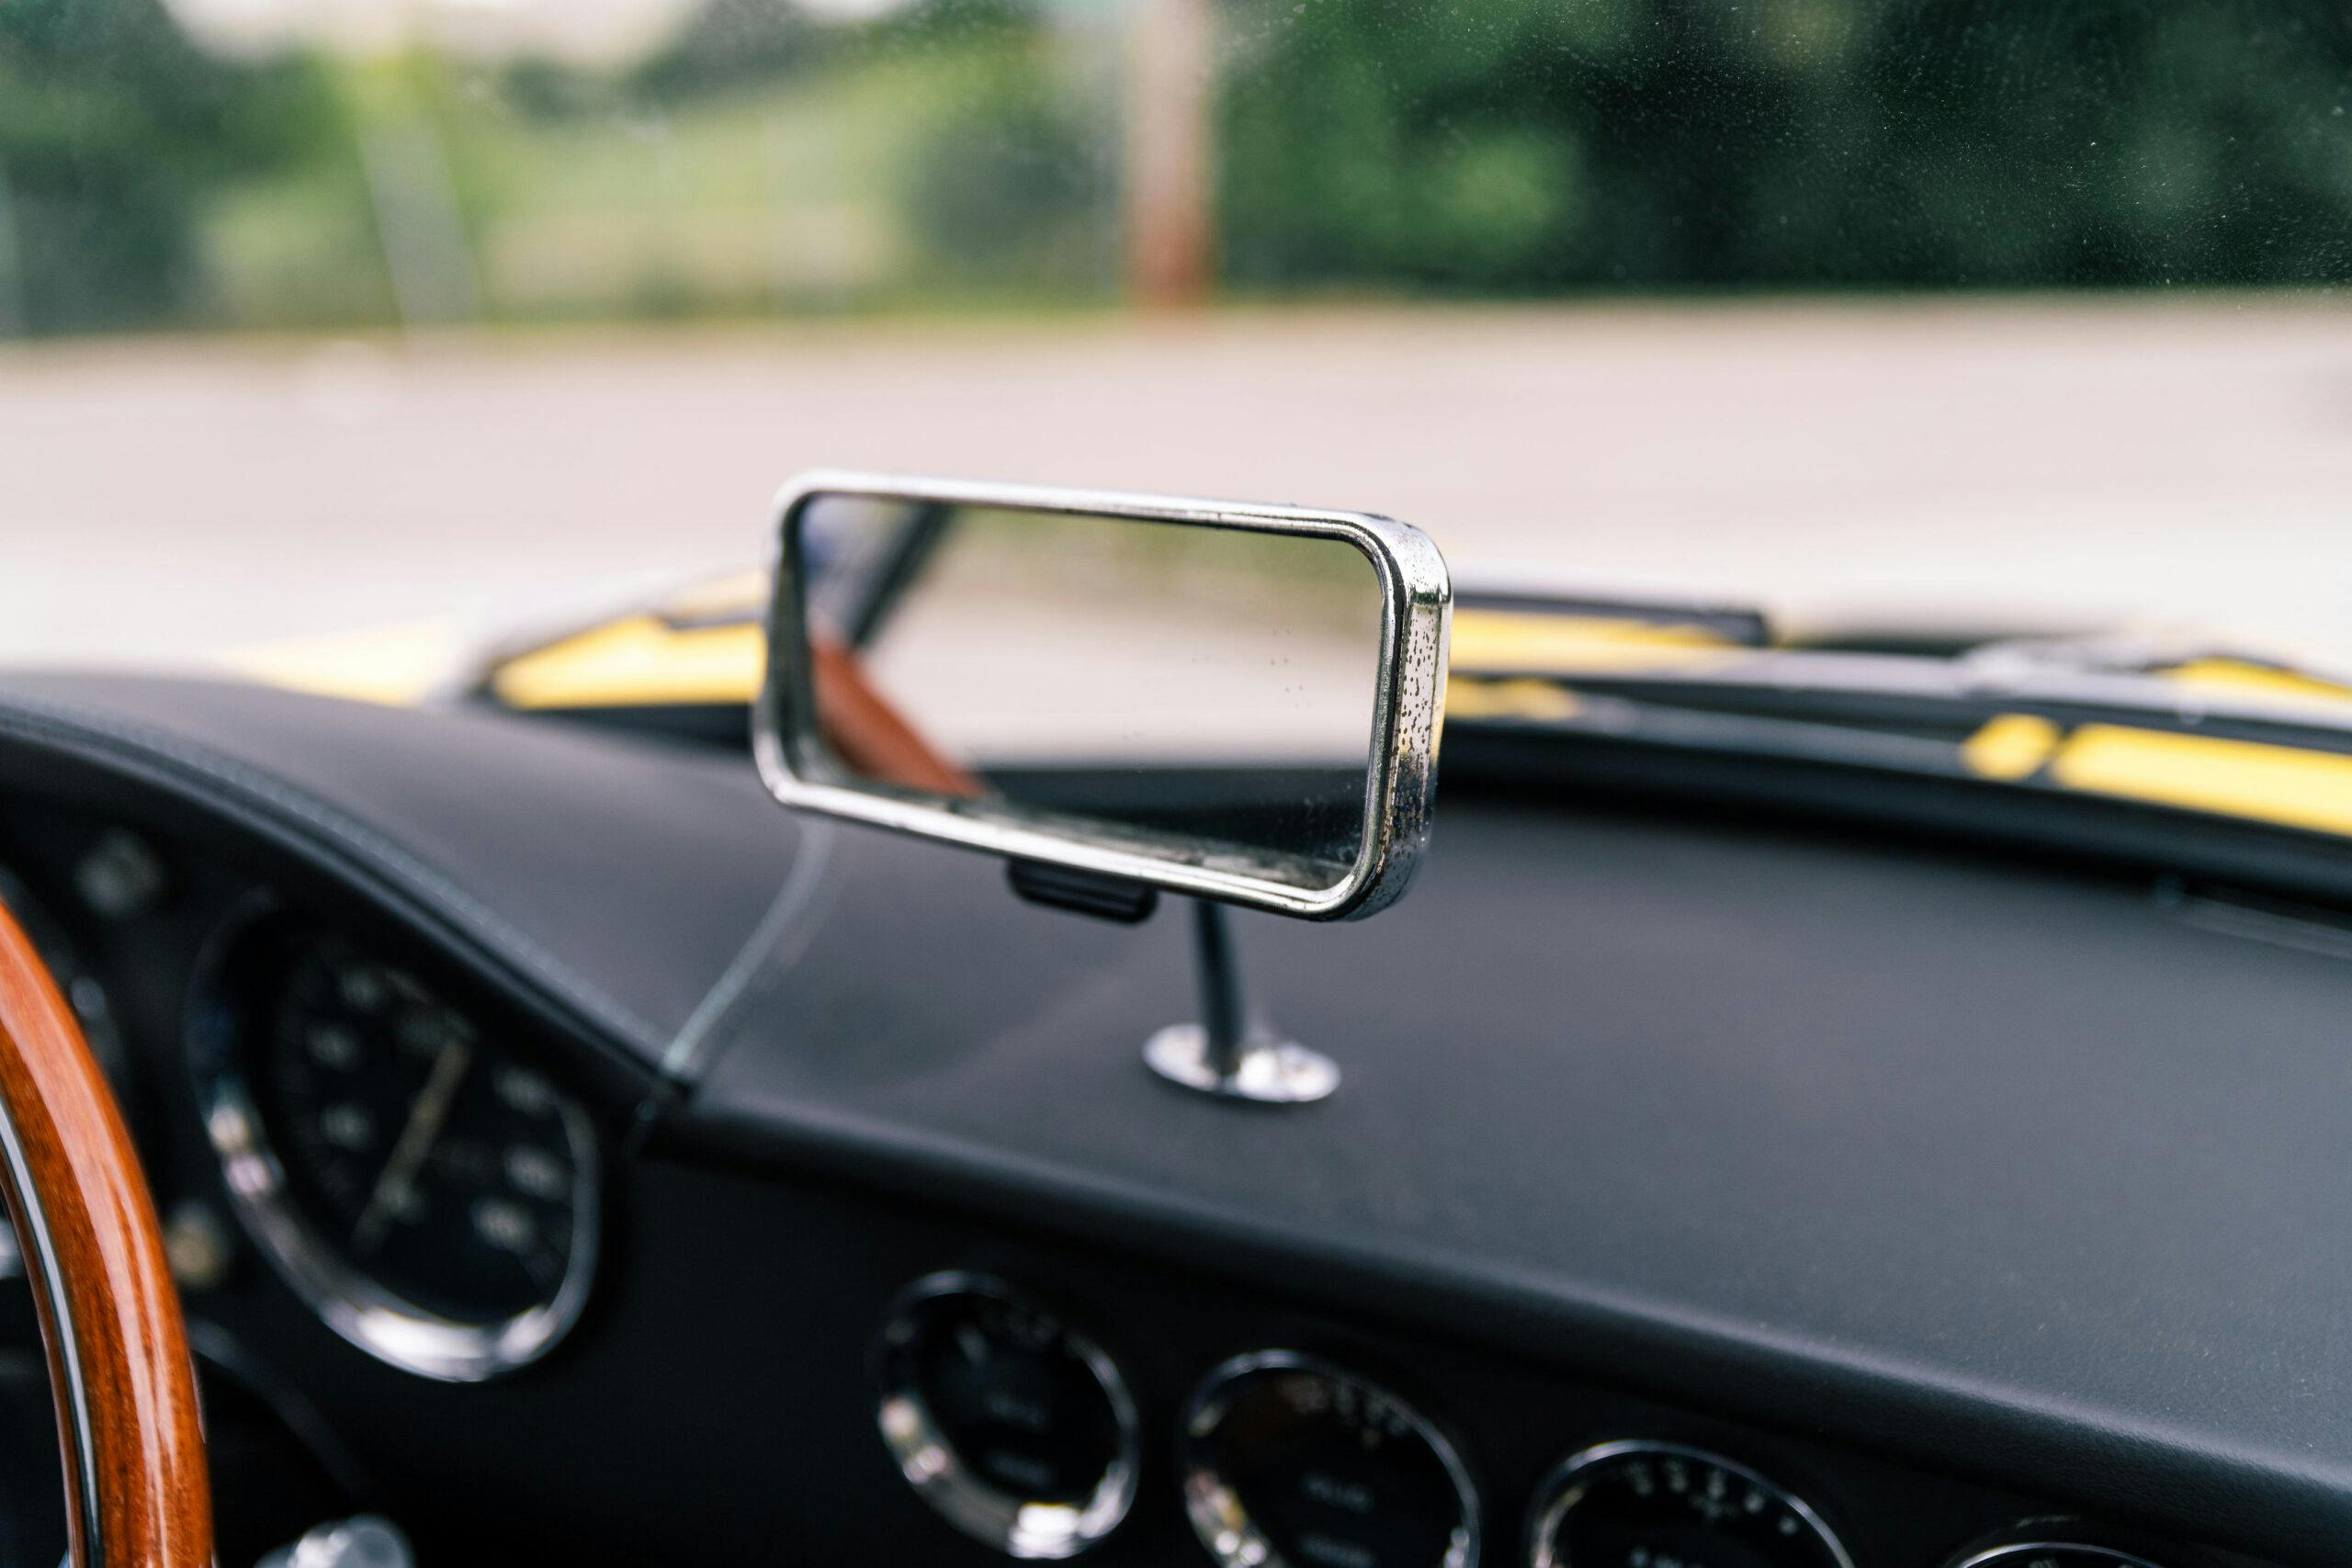 1965 Apollo GT interior rear view mirror dash mounted